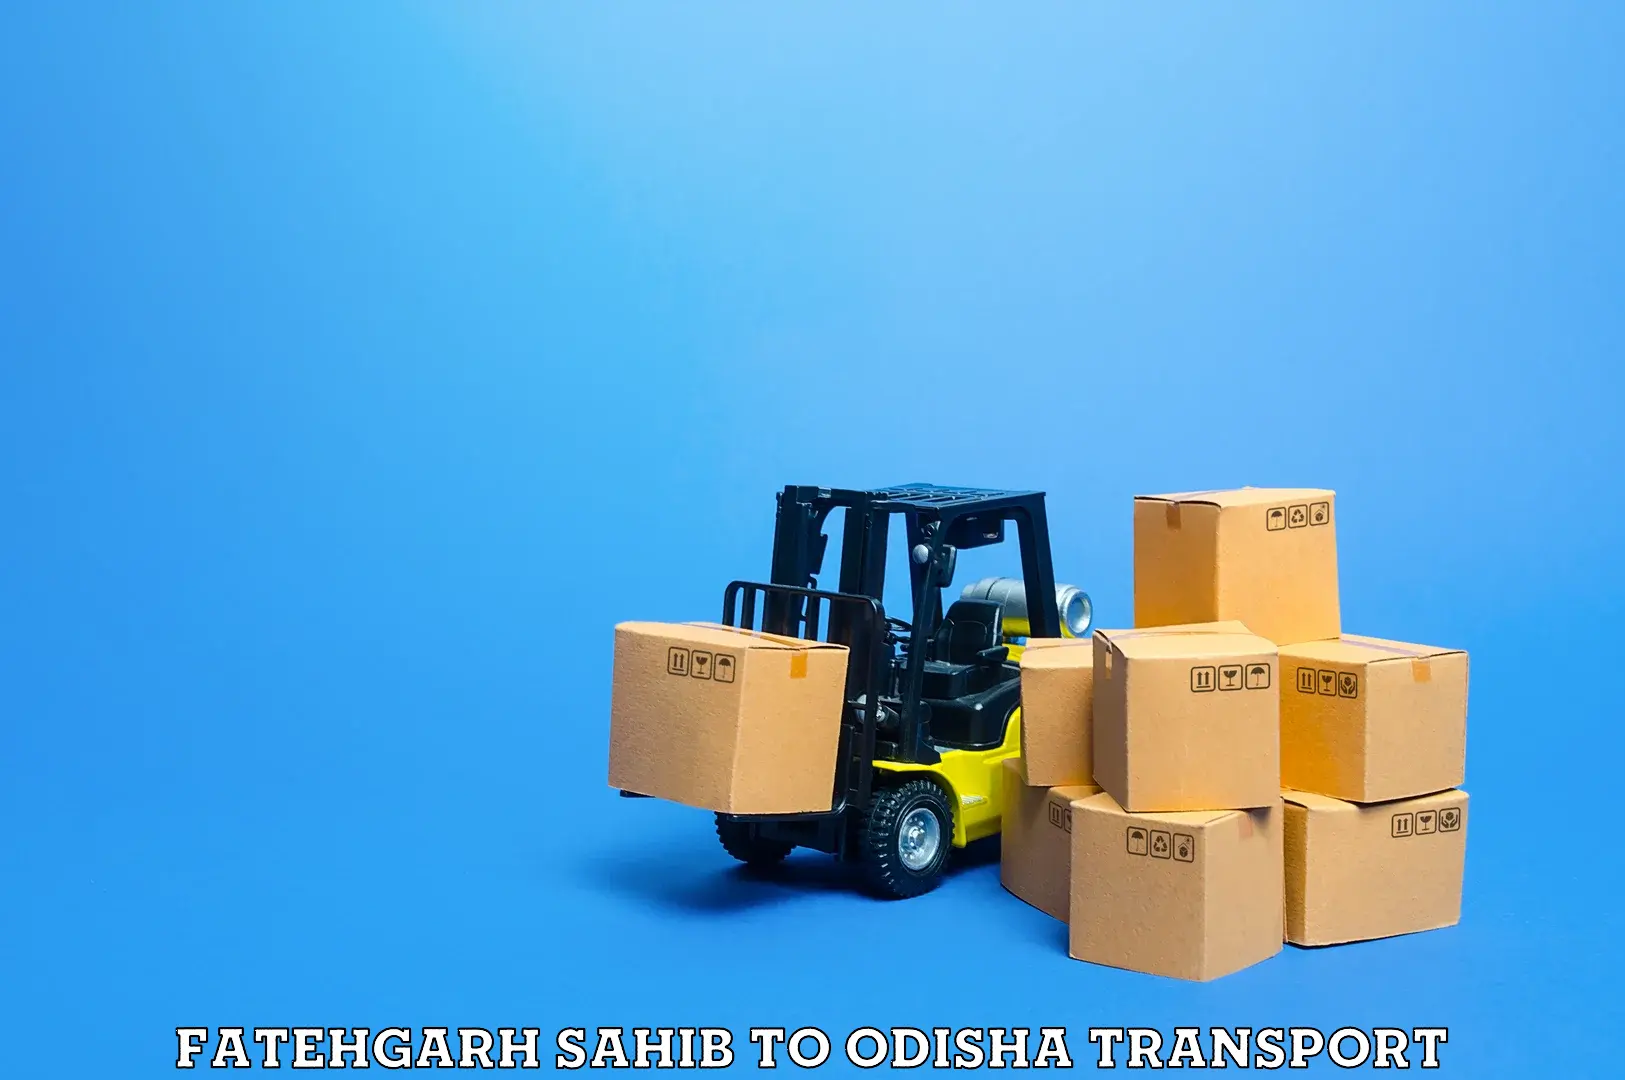 Shipping partner Fatehgarh Sahib to Tikiri